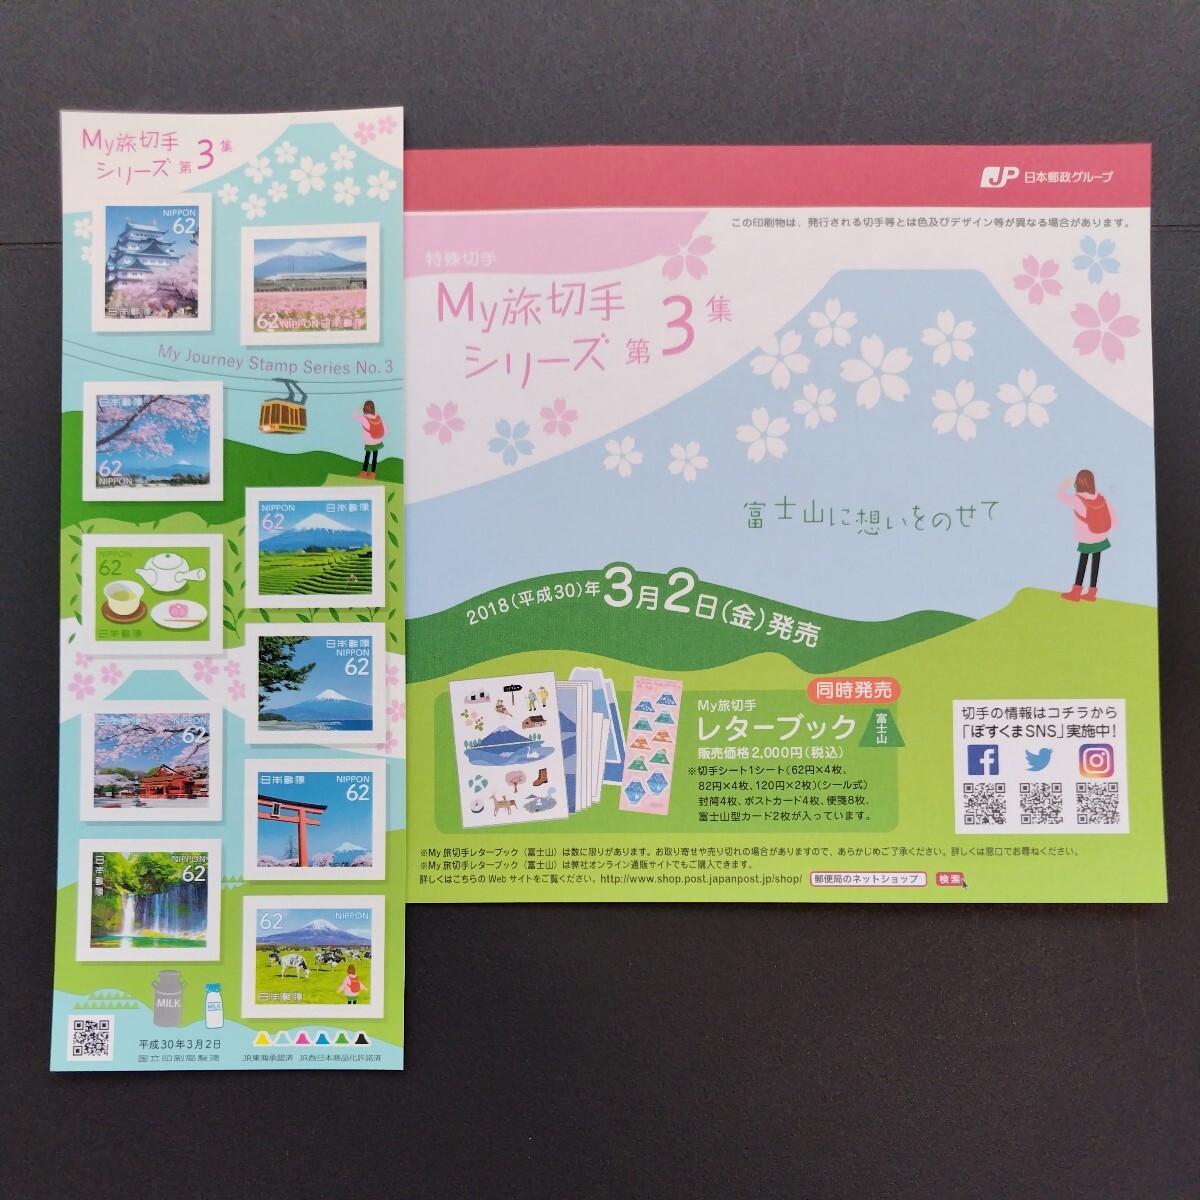 2018(平成30)年特殊切手(シール式)、「My旅切手シリーズ第3集 富士山亅、62円10枚、82円10枚、2シート、総額1,440円。各々リーフレット付。の画像2